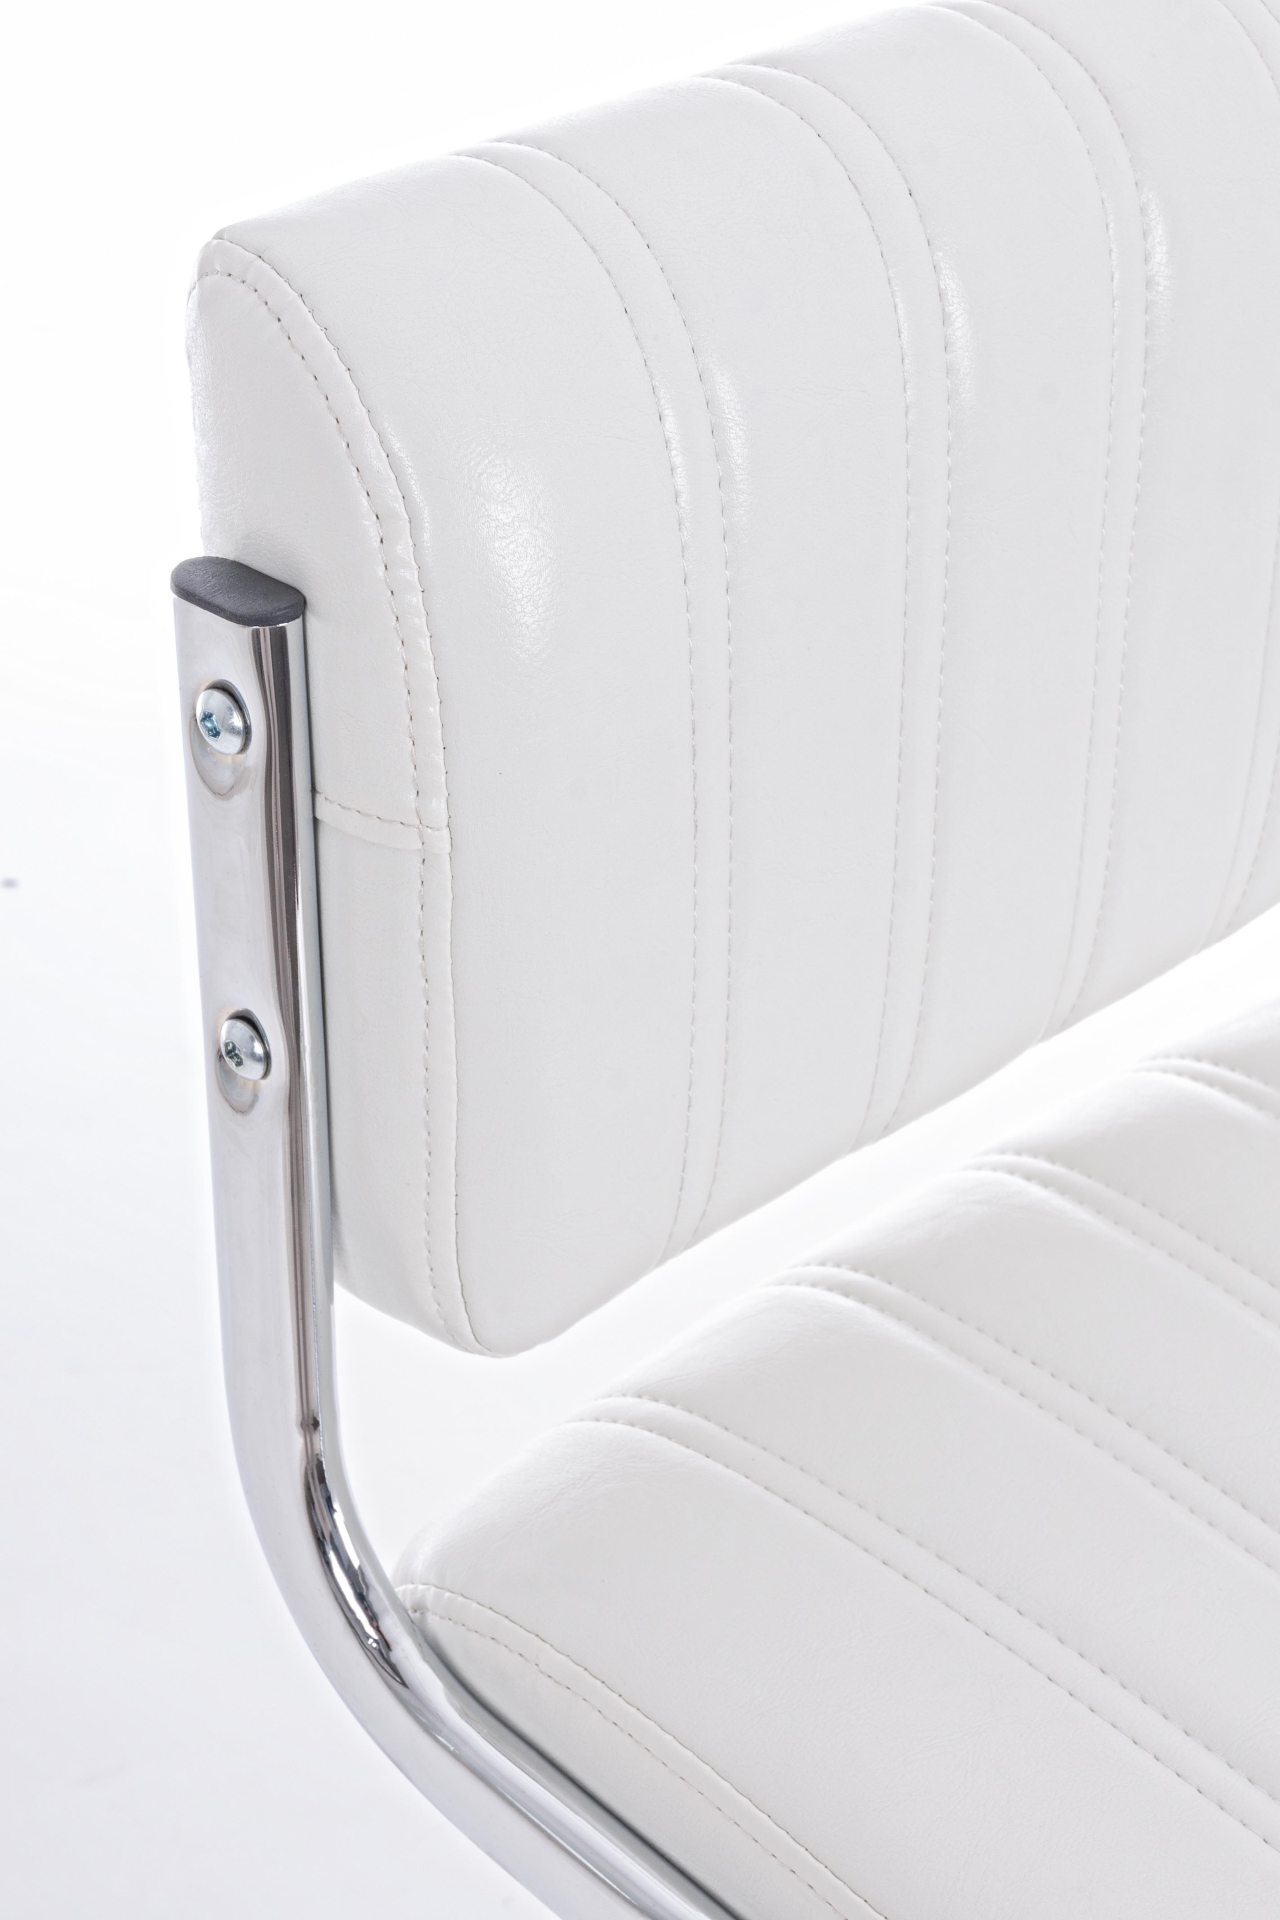 Der Barhocker Barclay überzeugt mit seinem klassischen Design. Gefertigt wurde er aus Kunstleder, welches einen weißen Farbton besitzt. Das Gestell ist aus Metall und hat eine silberne Farbe. Die Sitzhöhe des Hockers ist höhenverstellbar.